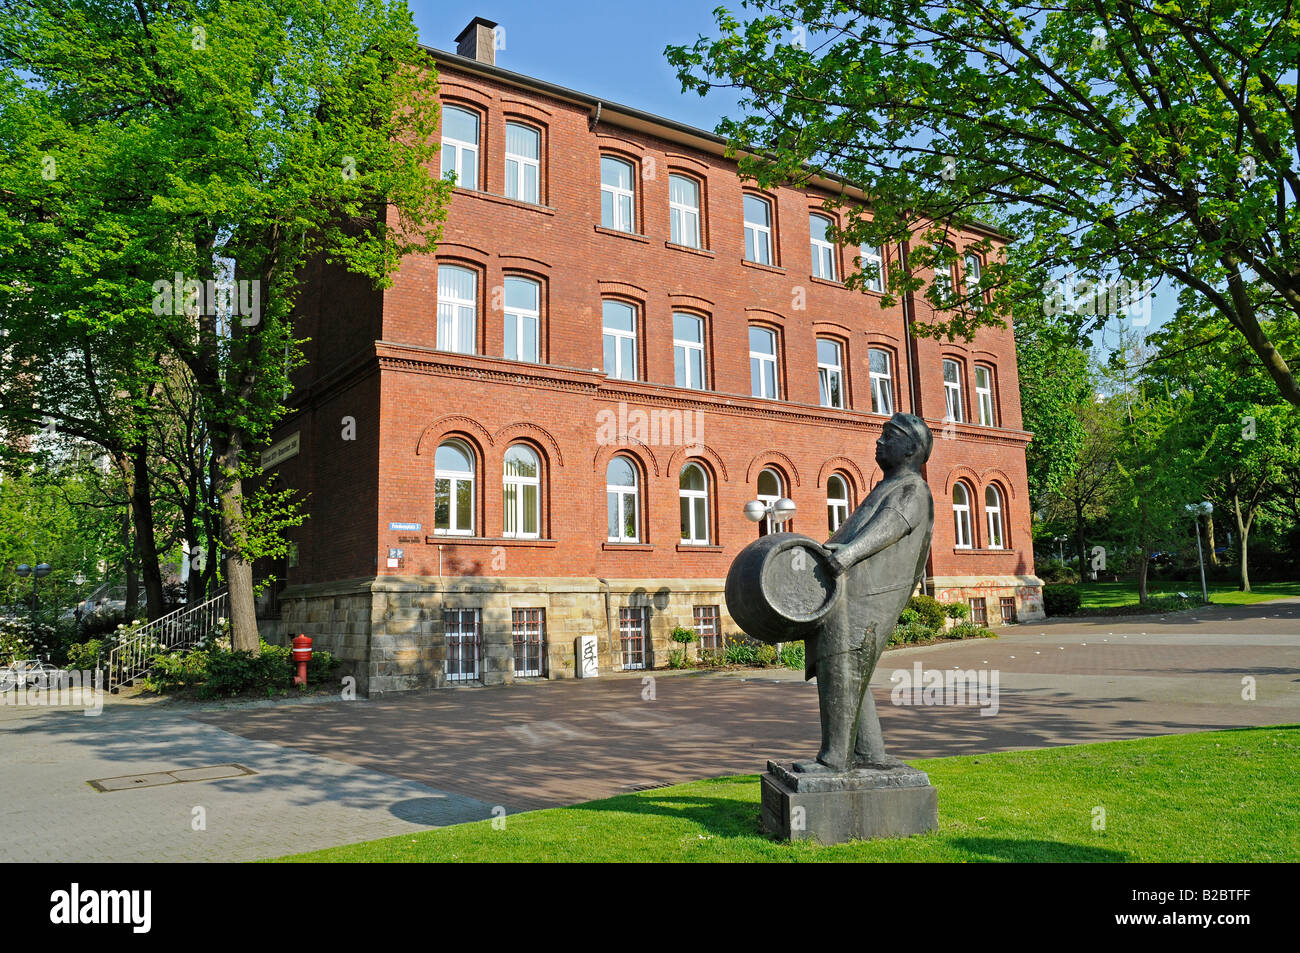 Bierkutscher Memorial, Bierstadt, city administration, park, Dortmund, North Rhine-Westphalia, Germany, Europe Stock Photo